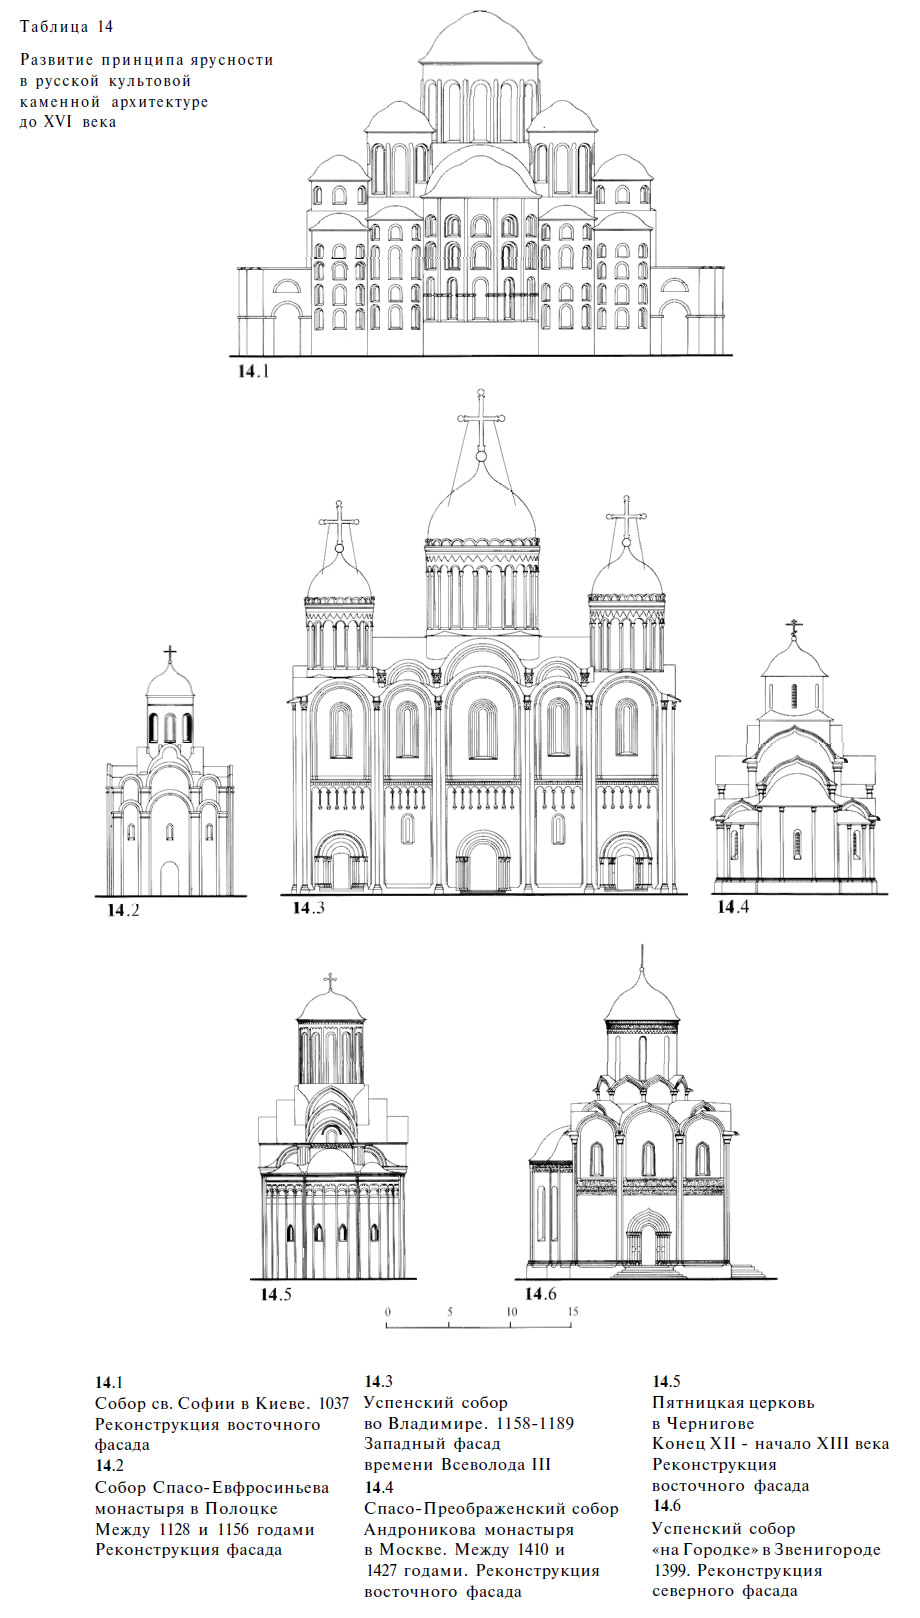 Развитие принципа ярусности в русской каменной архитектуре до XVI века